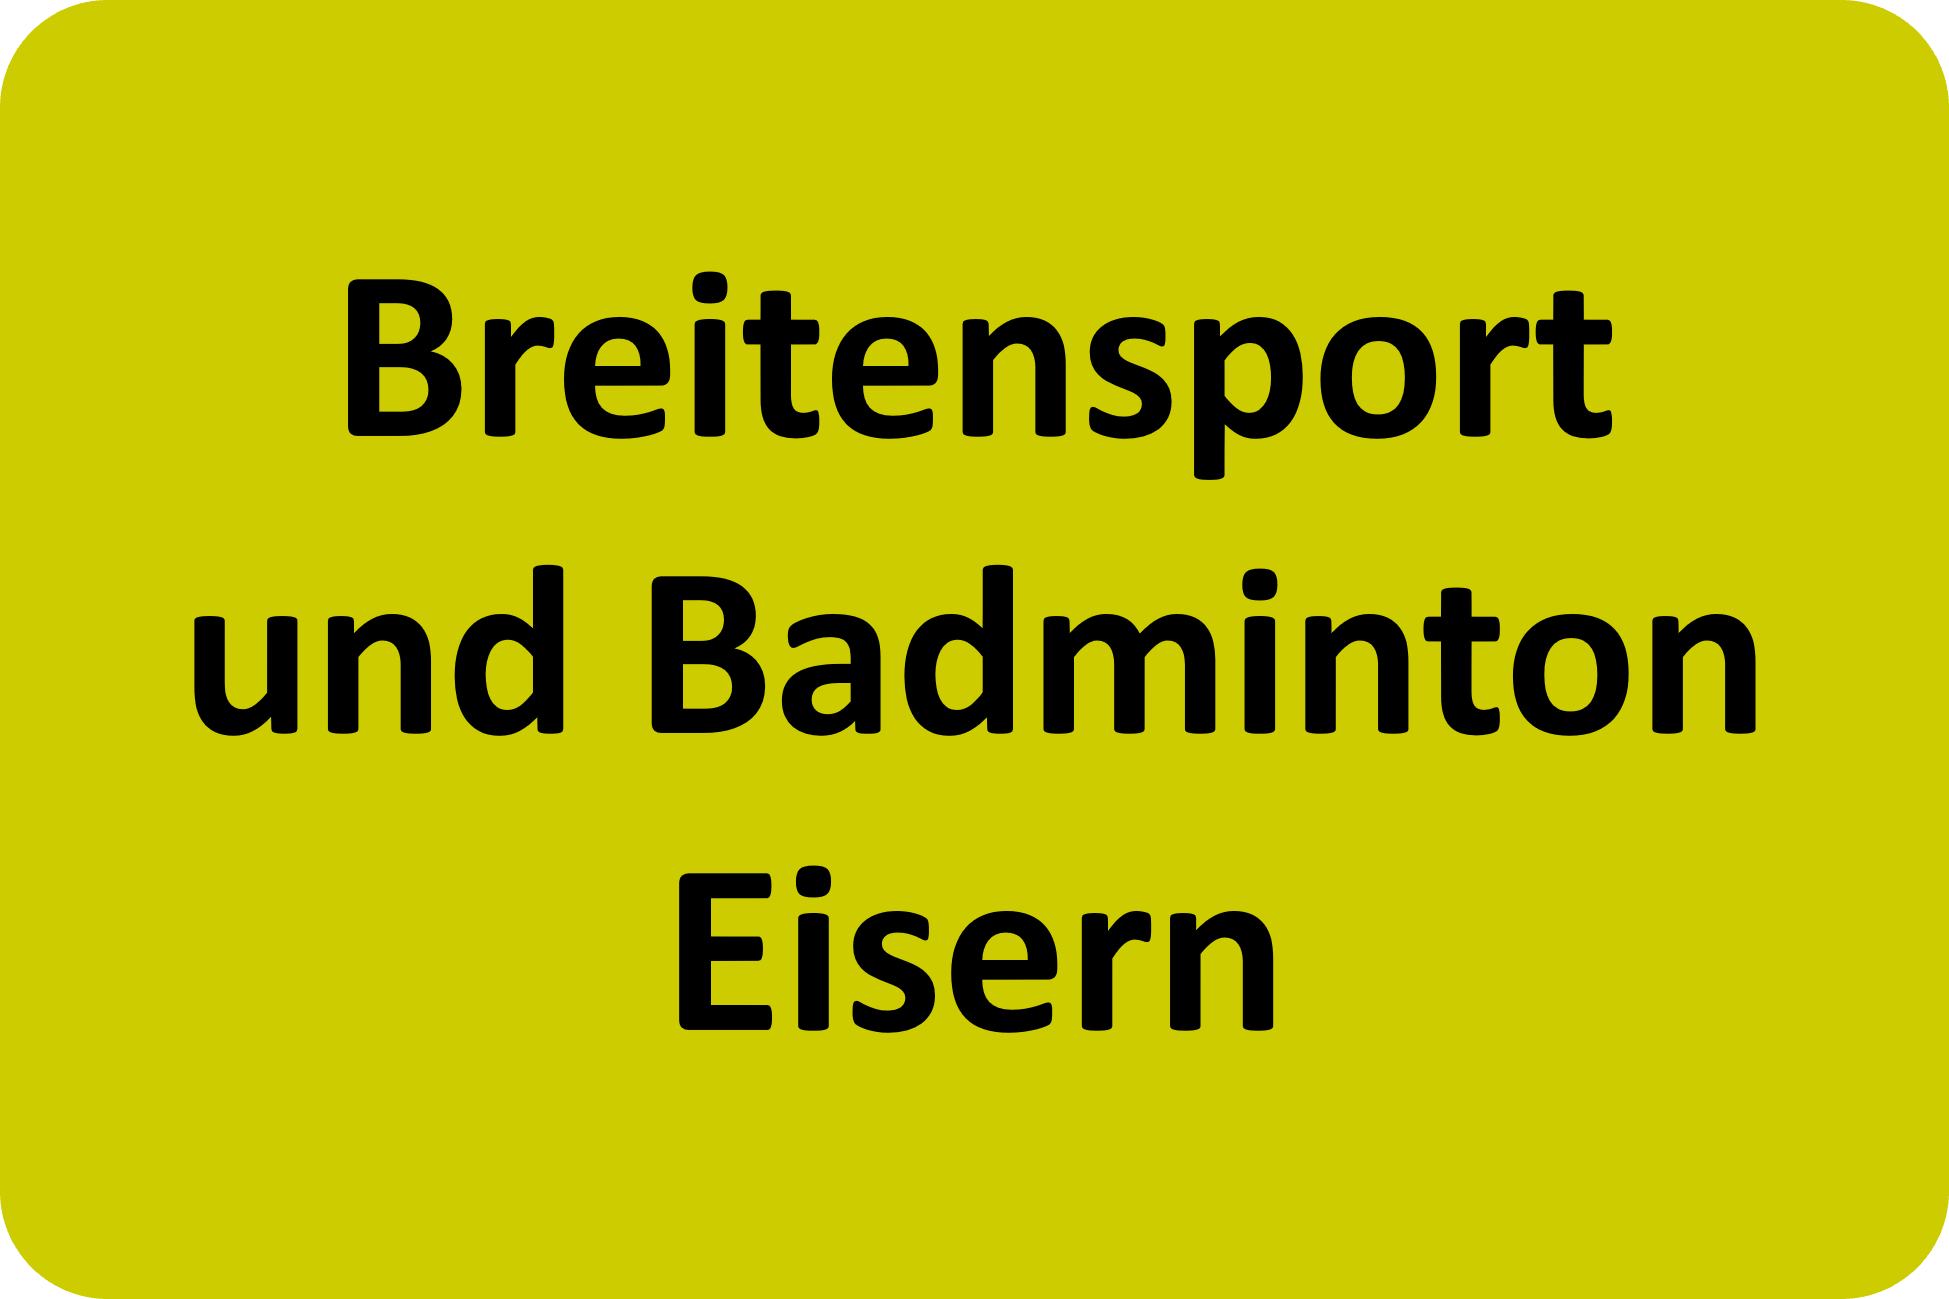 Breitensport und Badminton Eisern